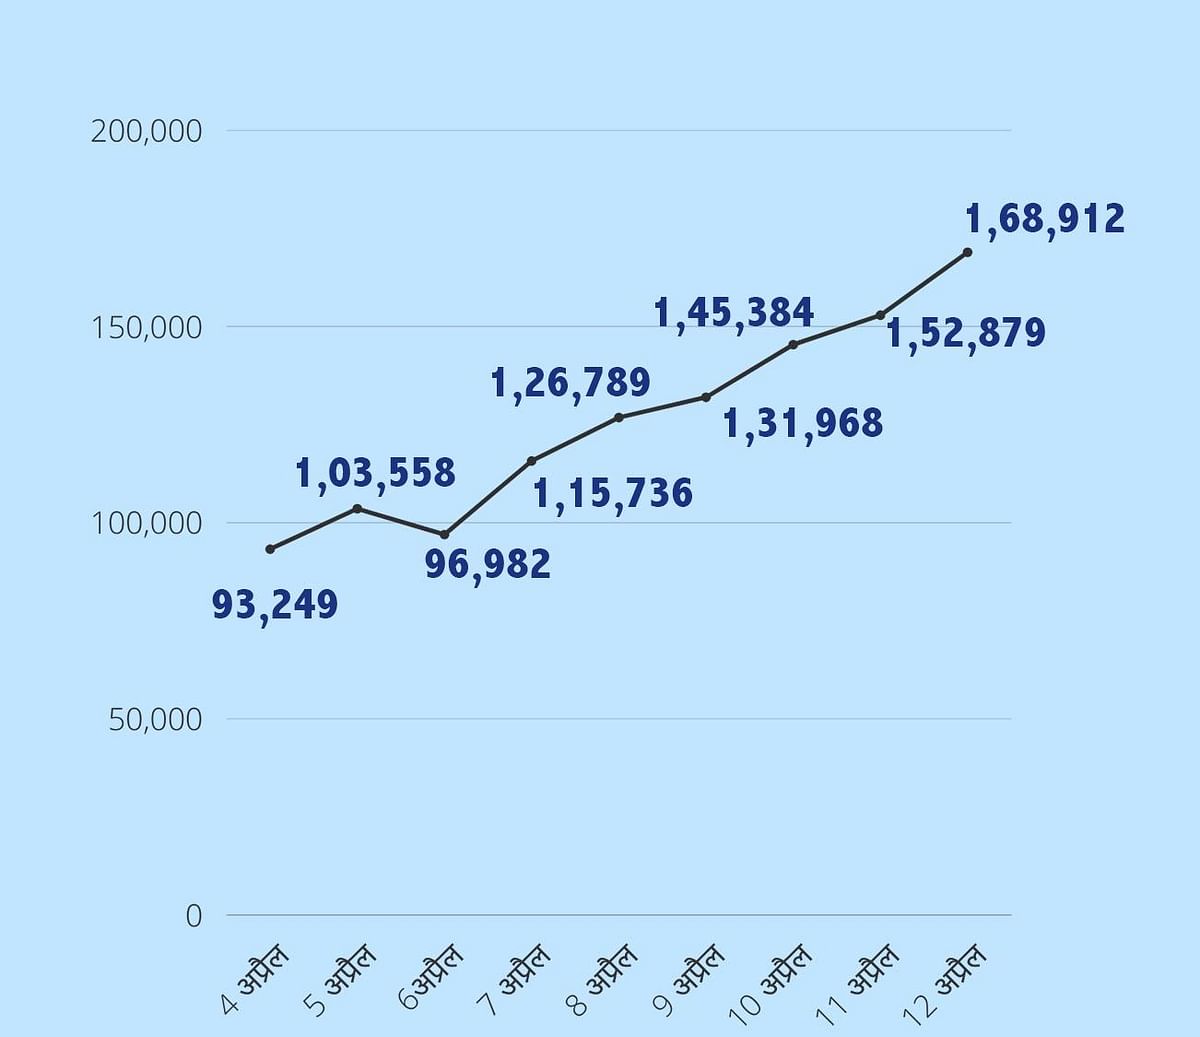 भारत में एक्टिव केसों की कुल संख्या 12 लाख पार कर गई है.